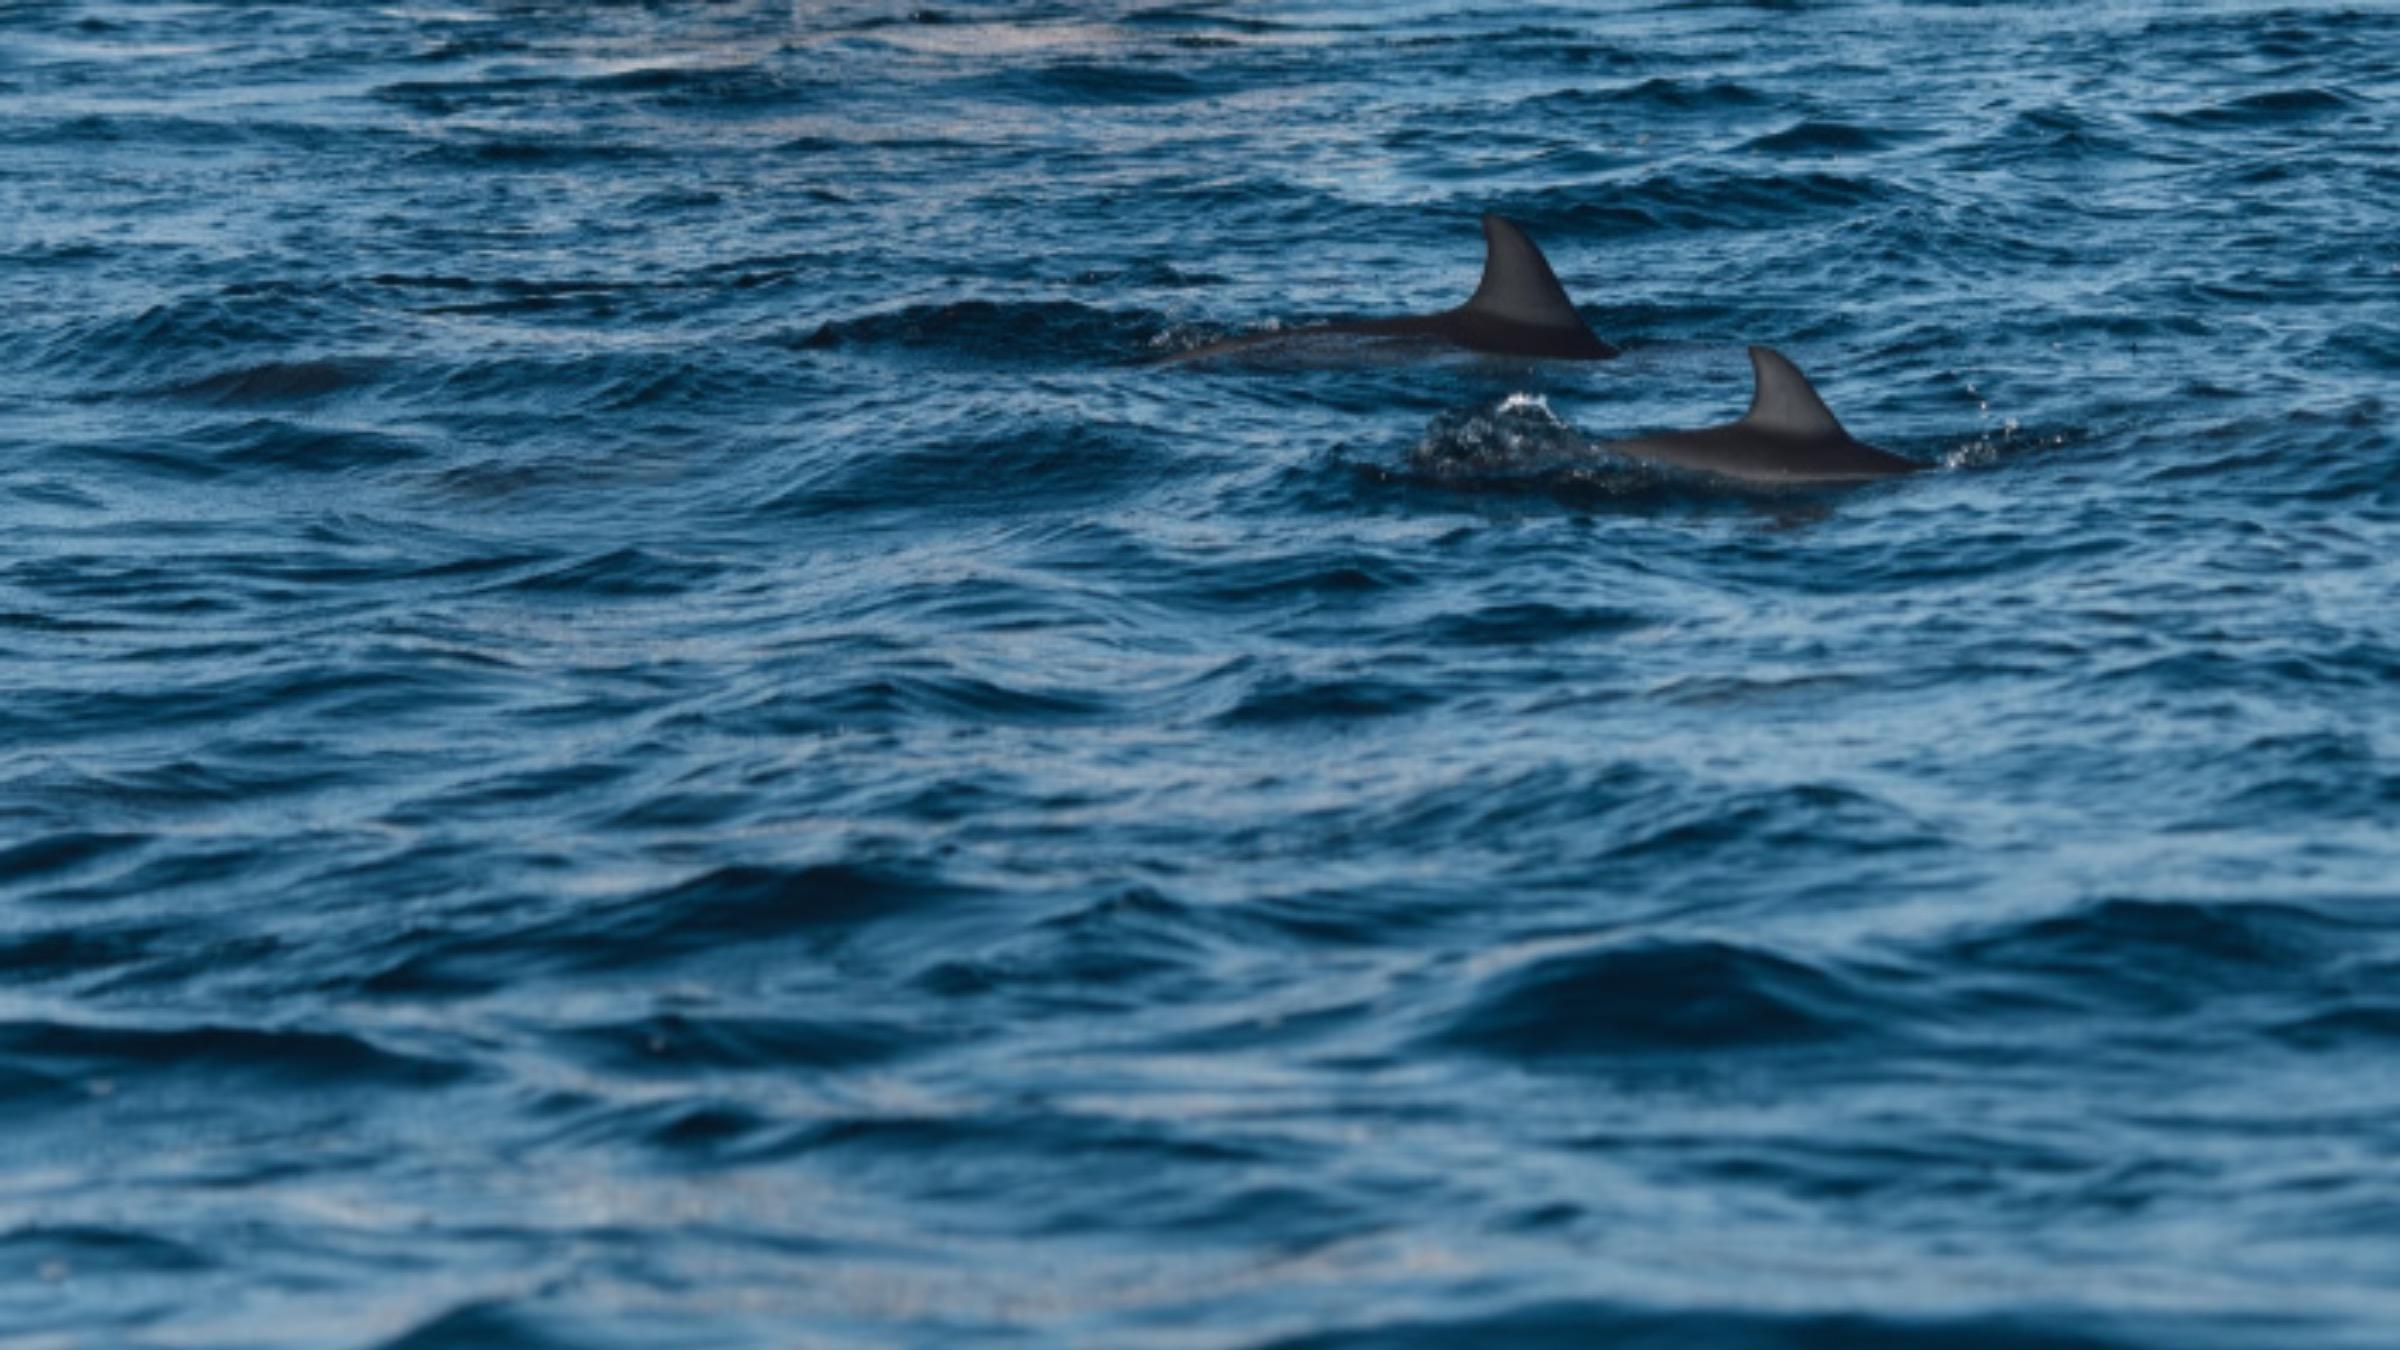 Дельфины качаются на волнах, созданных судном: видео украинских полярников - Pets